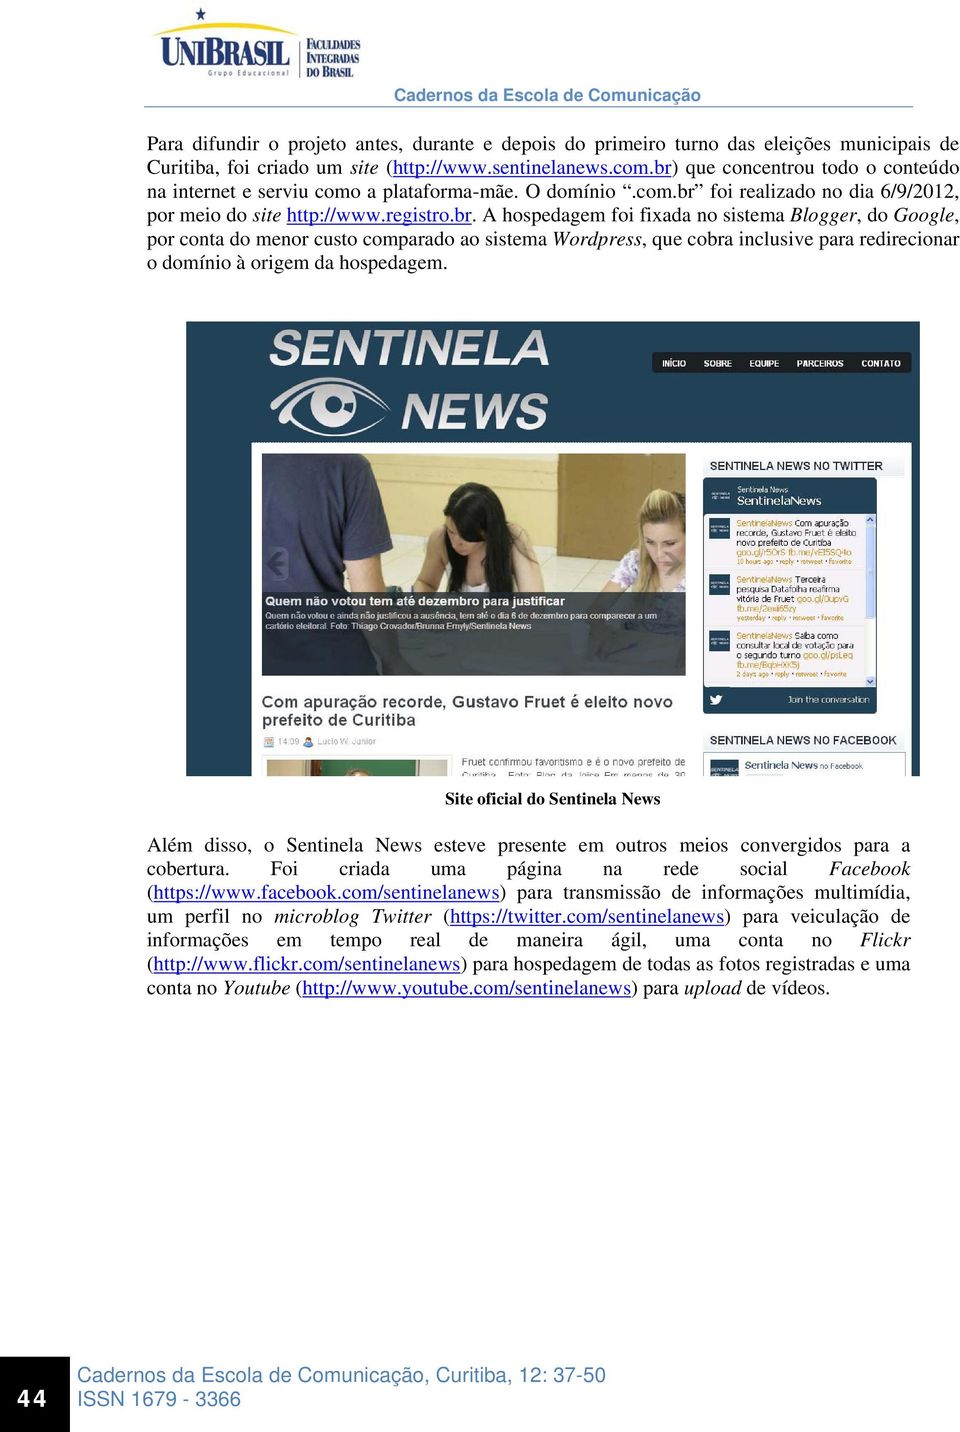 Site oficial do Sentinela News Além disso, o Sentinela News esteve presente em outros meios convergidos para a cobertura. Foi criada uma página na rede social Facebook (https://www.facebook.